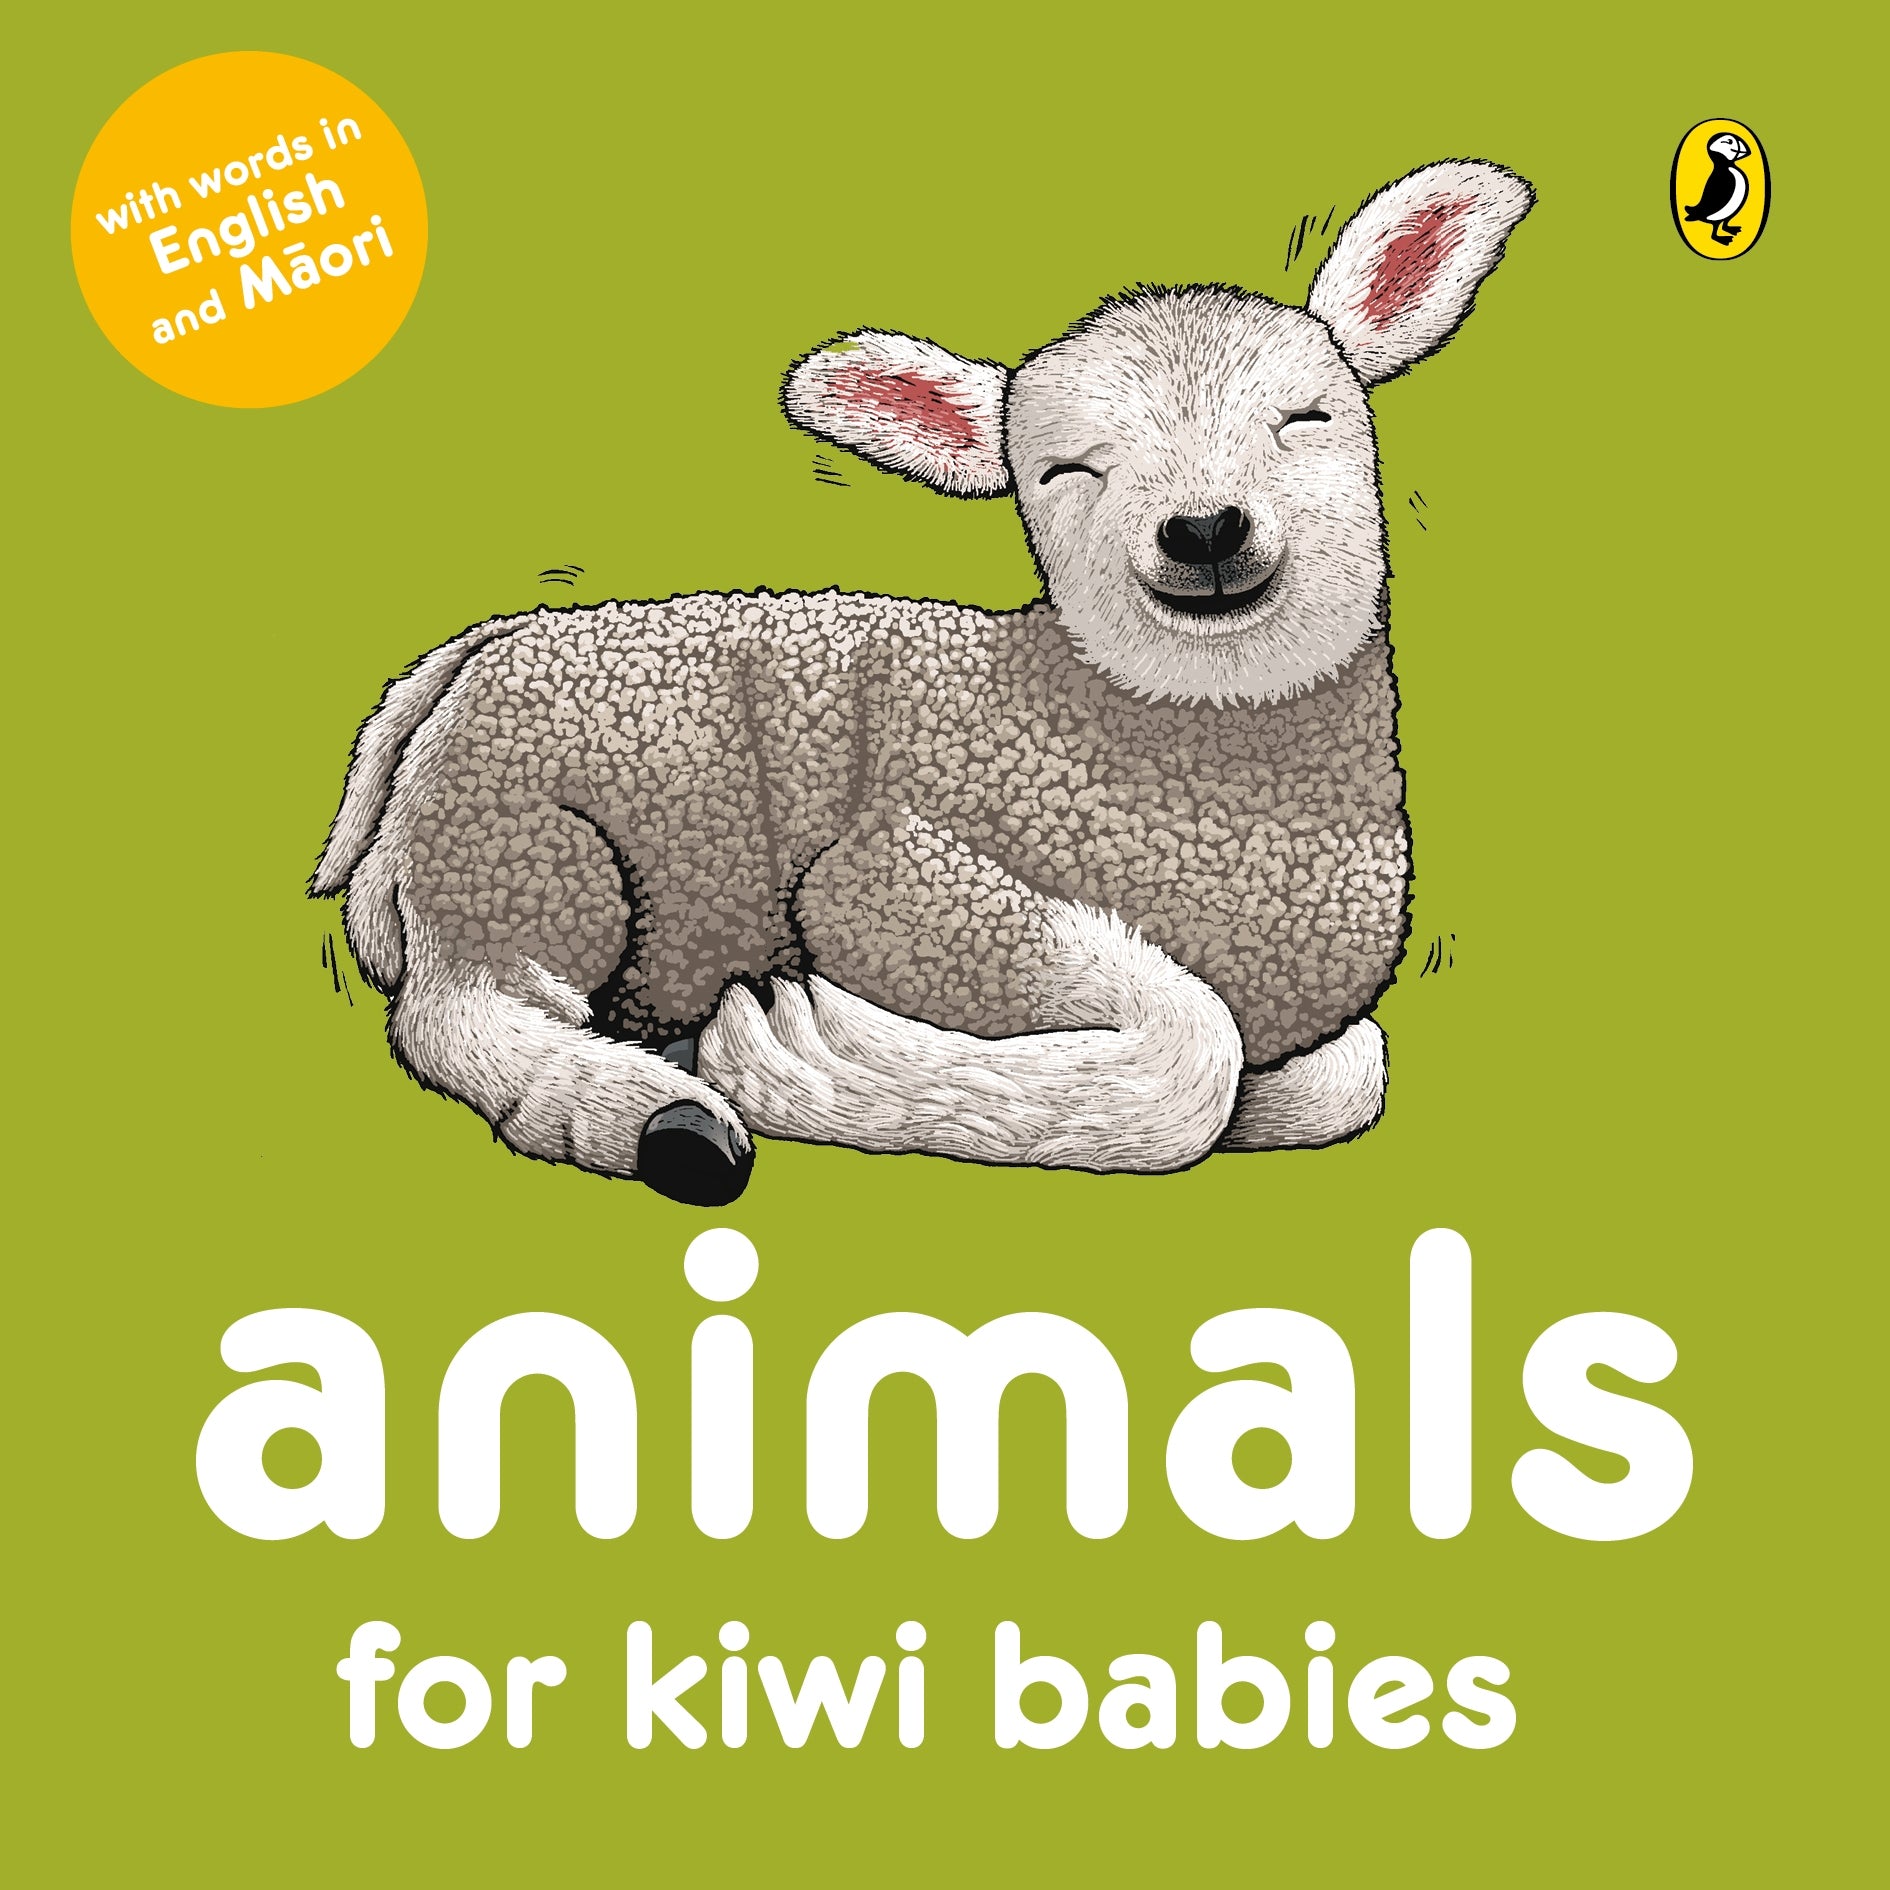 Animals for Kiwi Babies in Maori & English